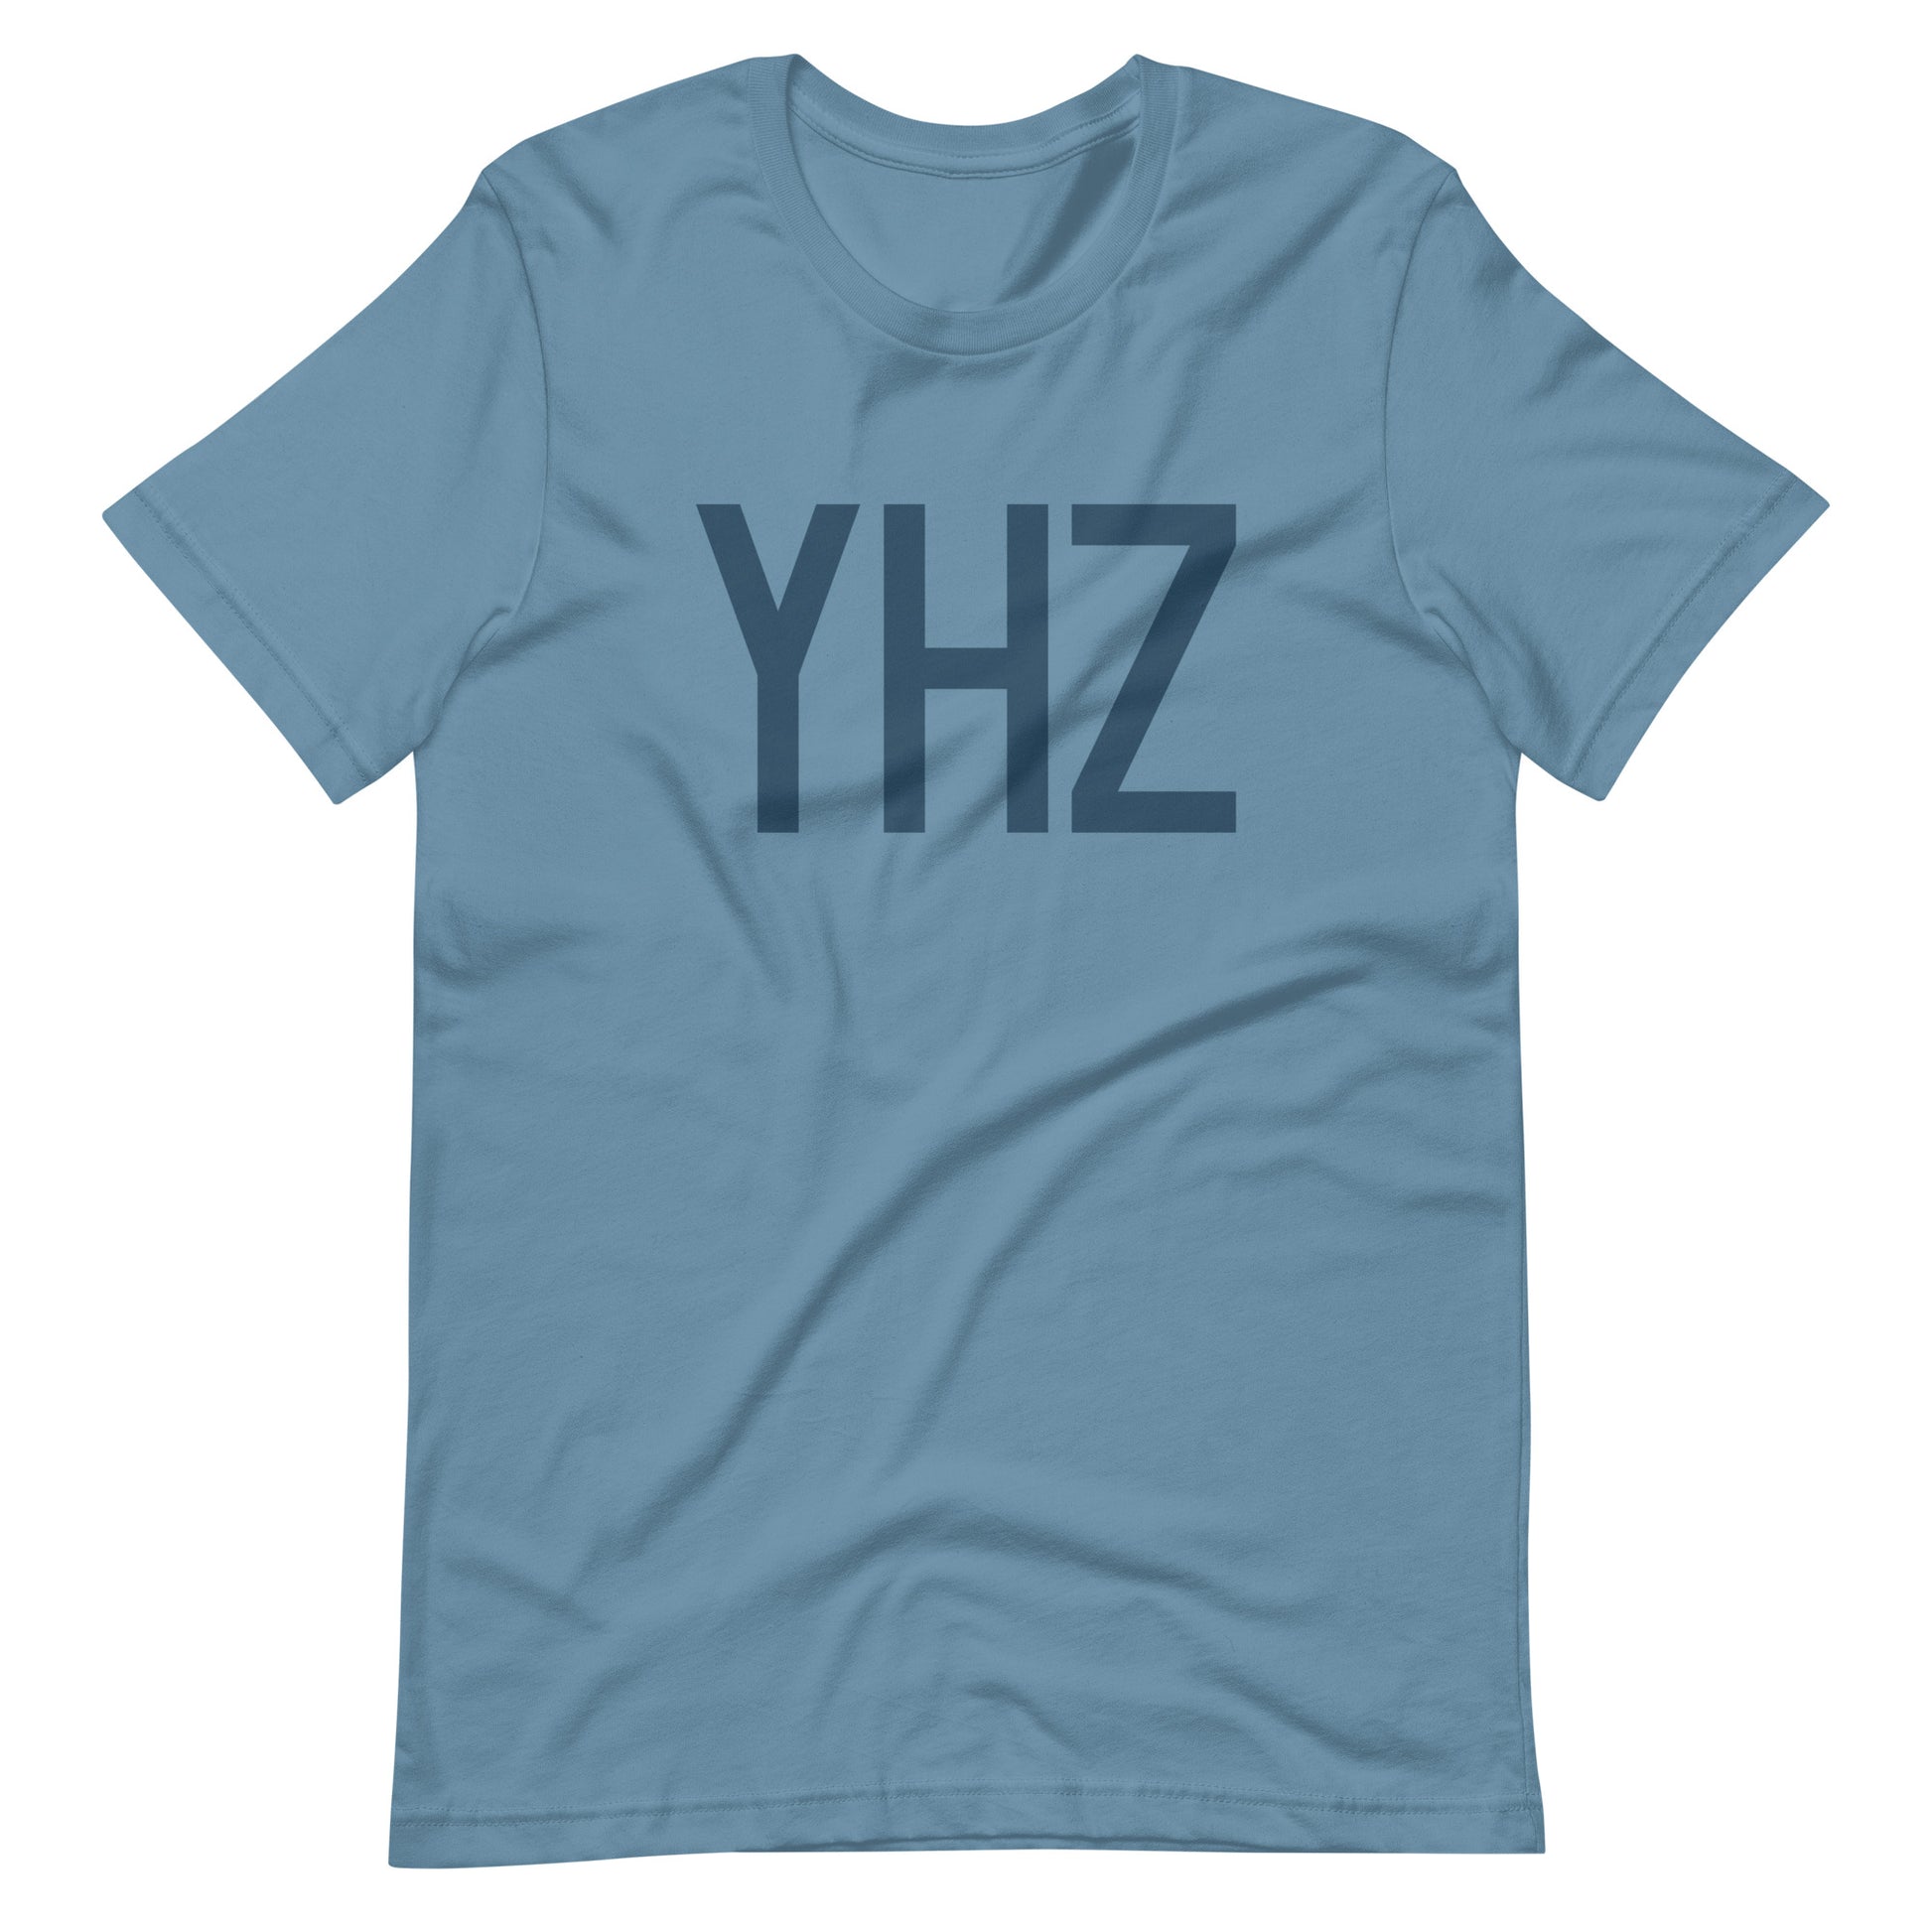 Aviation Lover Unisex T-Shirt - Blue Graphic • YHZ Halifax • YHM Designs - Image 01